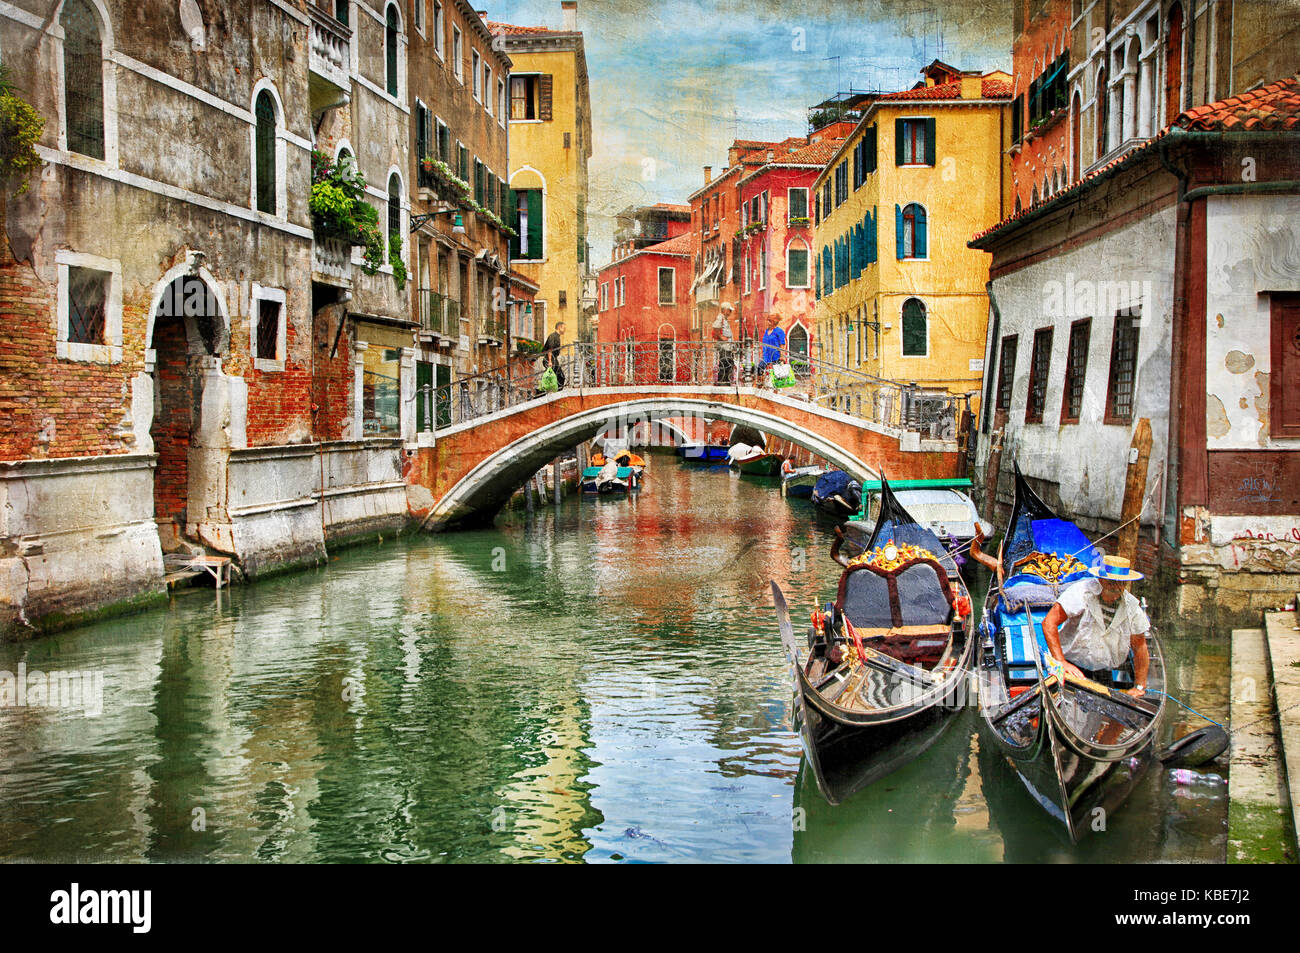 La bella Venecia romántica - fotografía artística en el estilo de la pintura Foto de stock